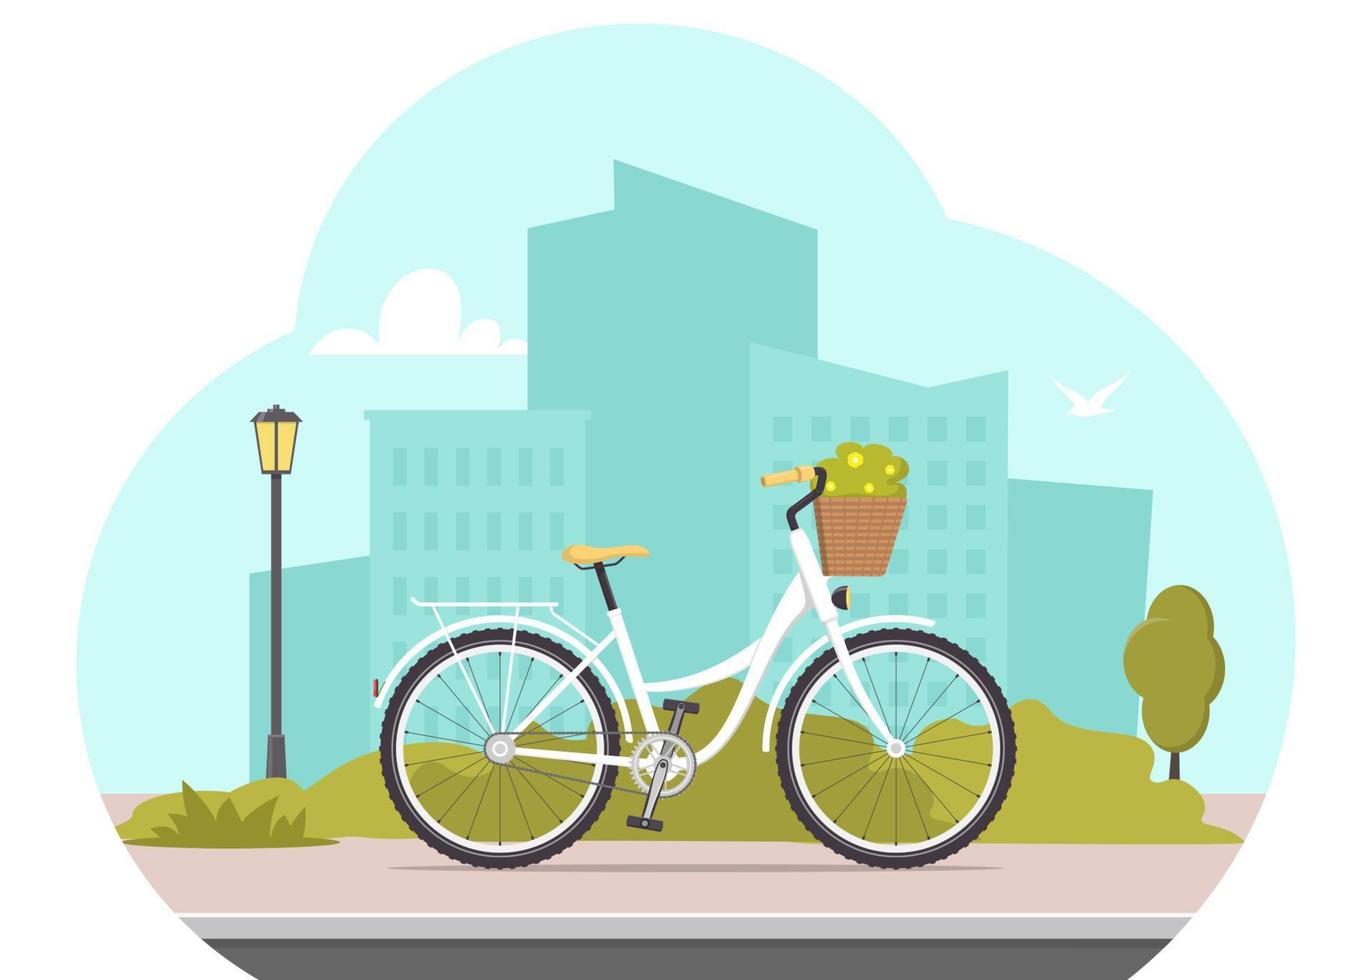 linda bicicleta en el fondo de la silueta de la ciudad. ilustración del concepto de bicicleta para aplicación o sitio web. transporte moderno. ilustración vectorial de estilo plano. vector